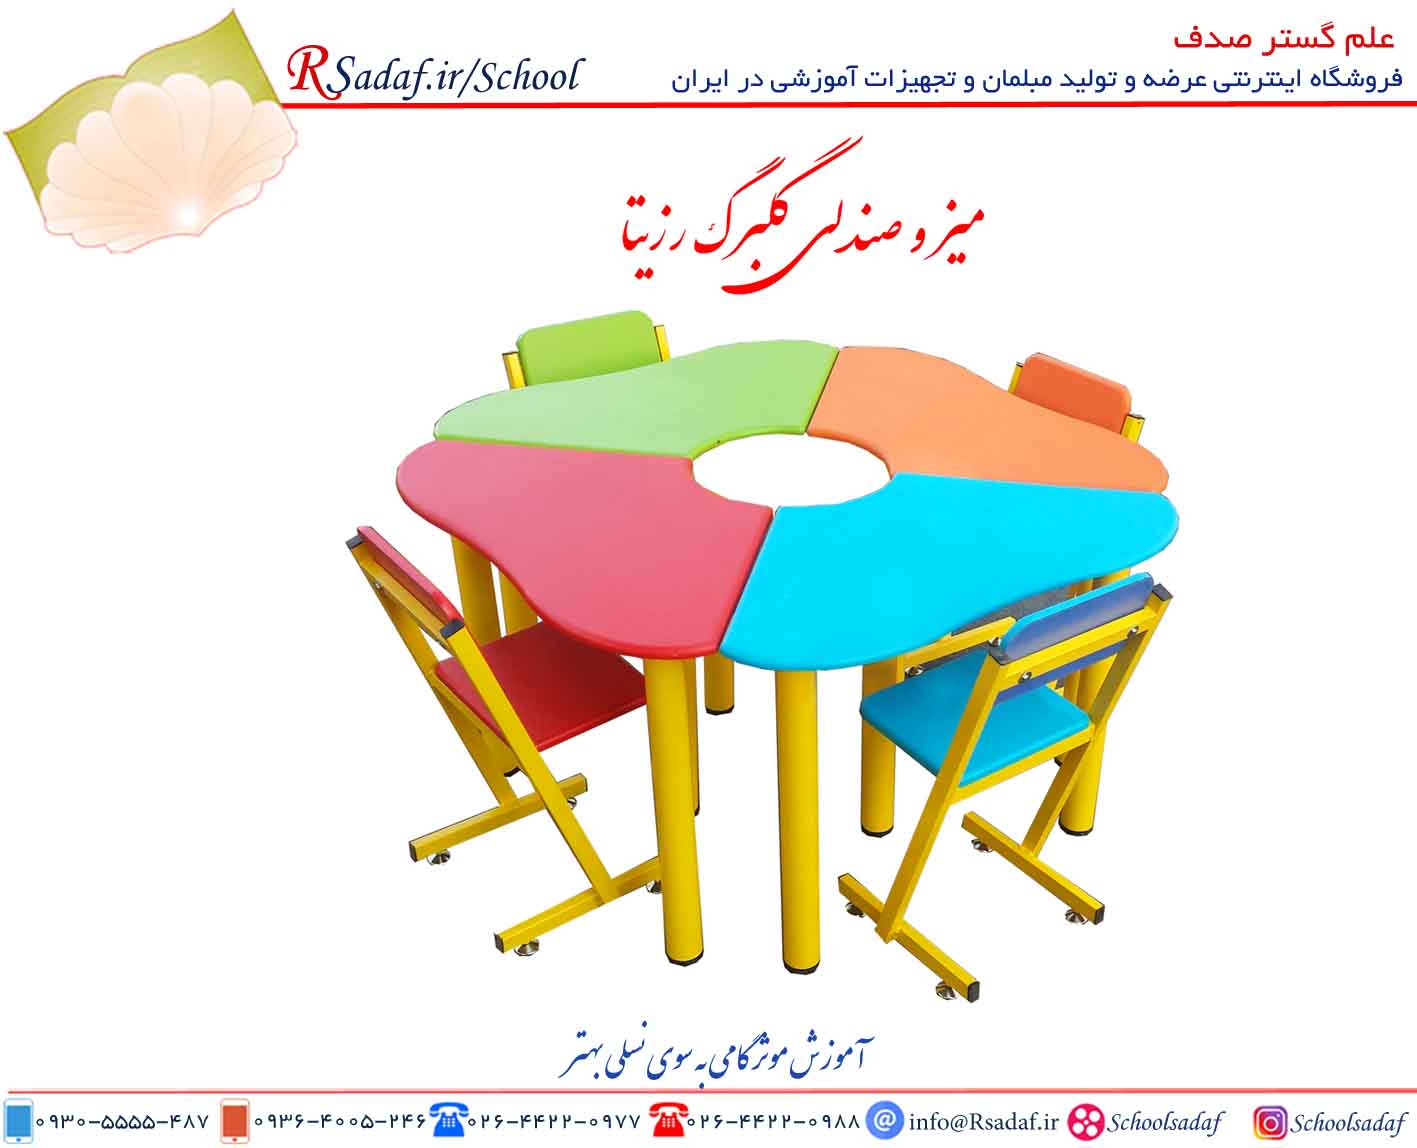 میر و صندلی آموزشی گلبرگ رزیتا مناسب پیش دبستانی و مهد کودک